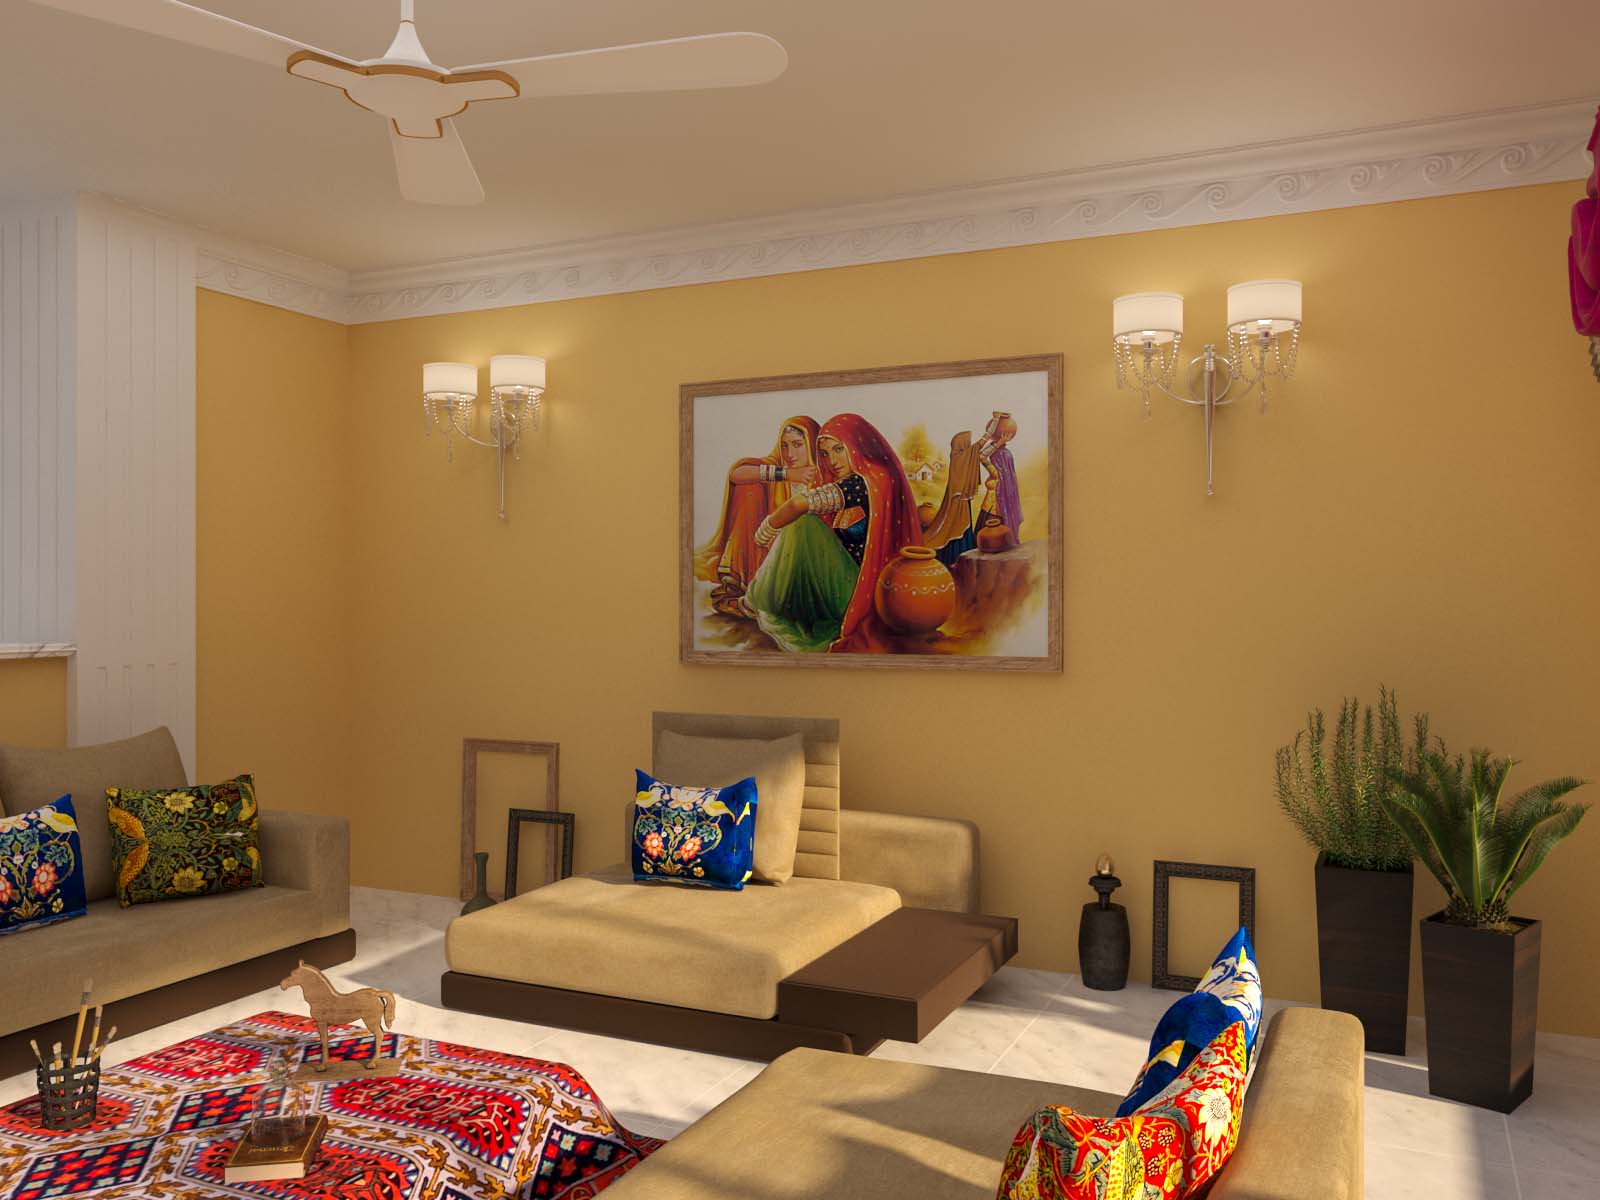 rajasthani style living room